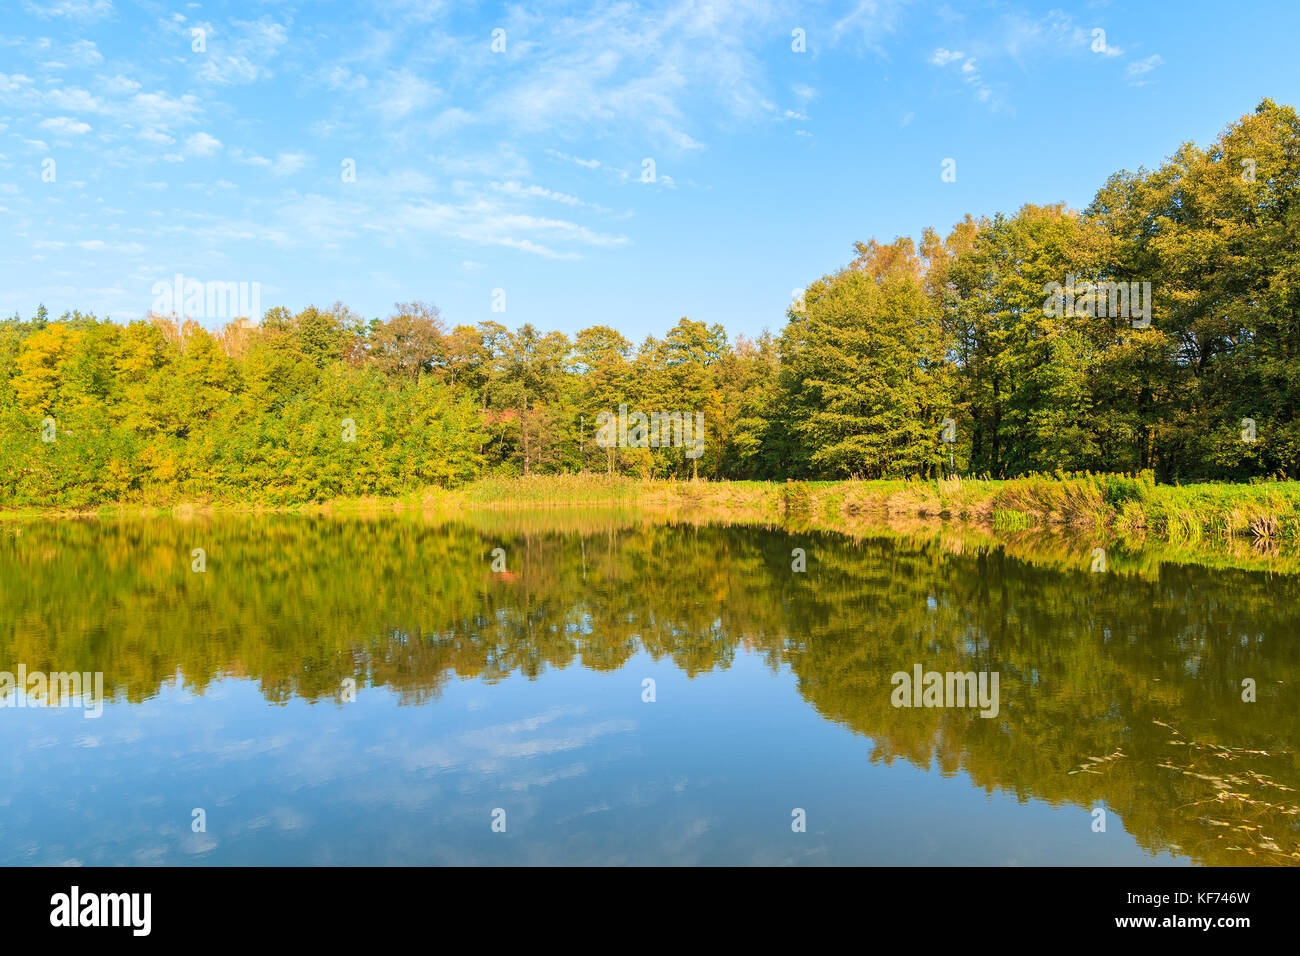 Reflet d'arbres colorés au petit lac en automne, la Pologne Banque D'Images